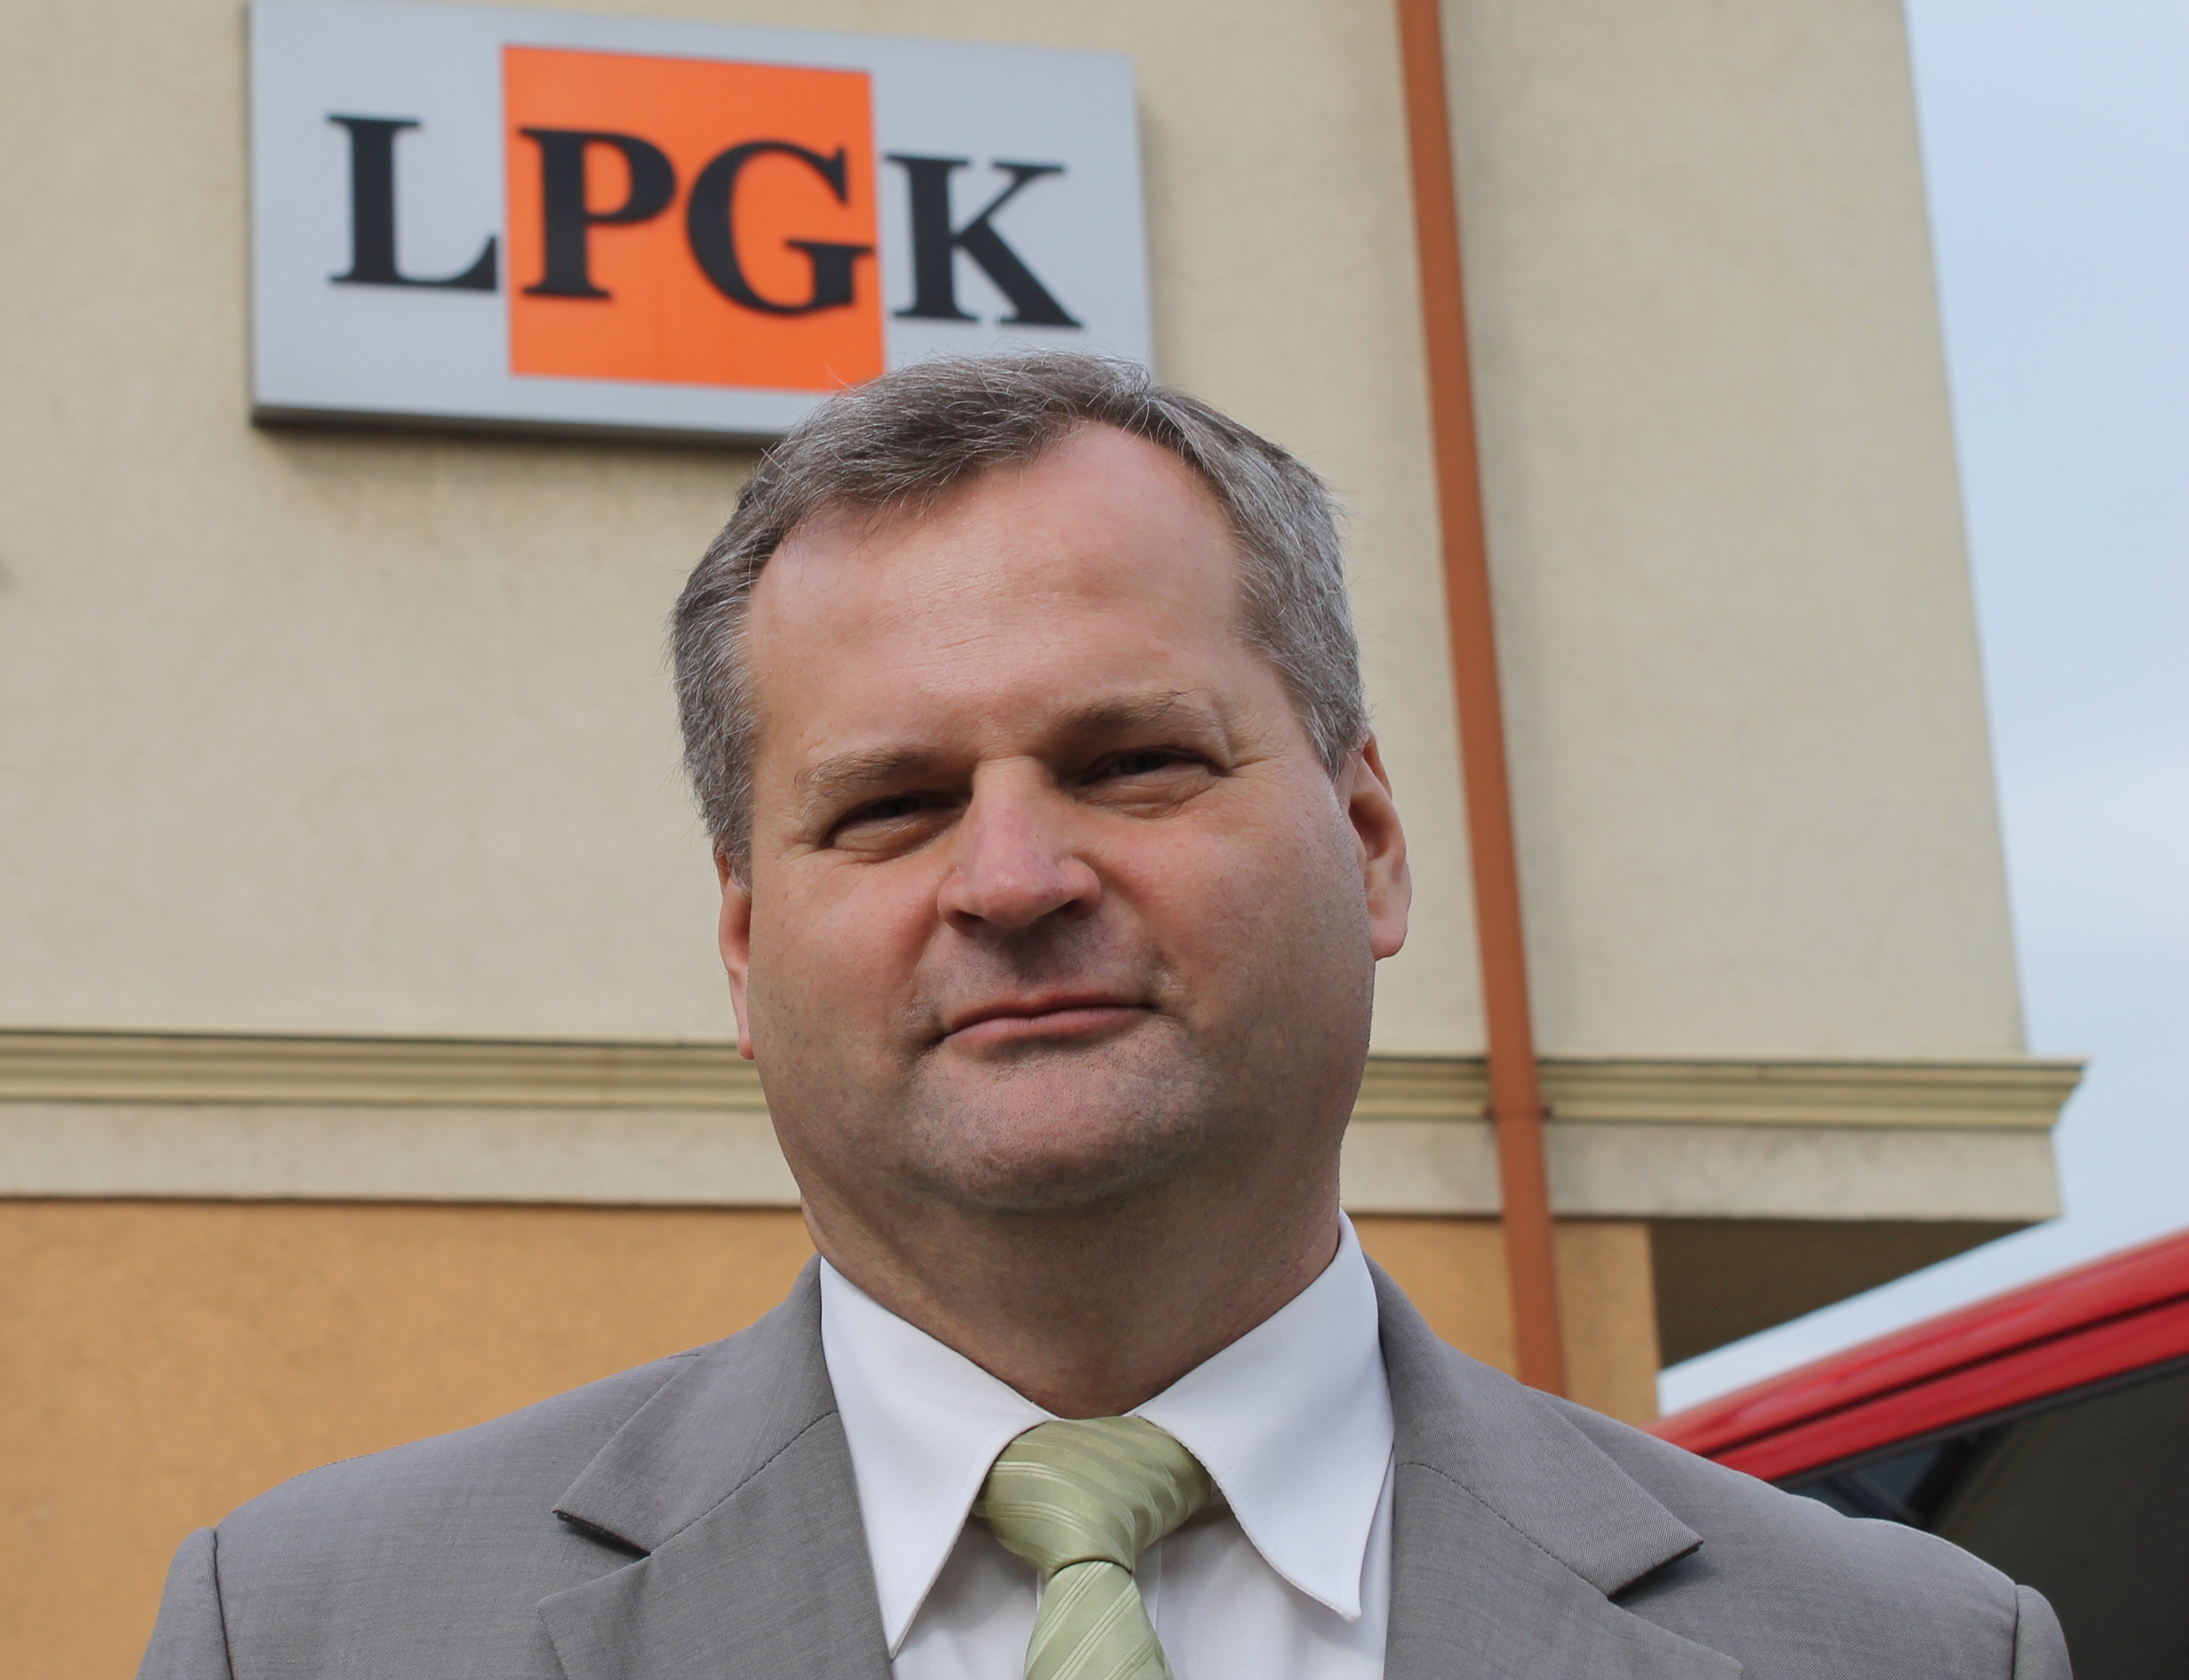 Graboń nowym prezesem LPGK (WIDEO)